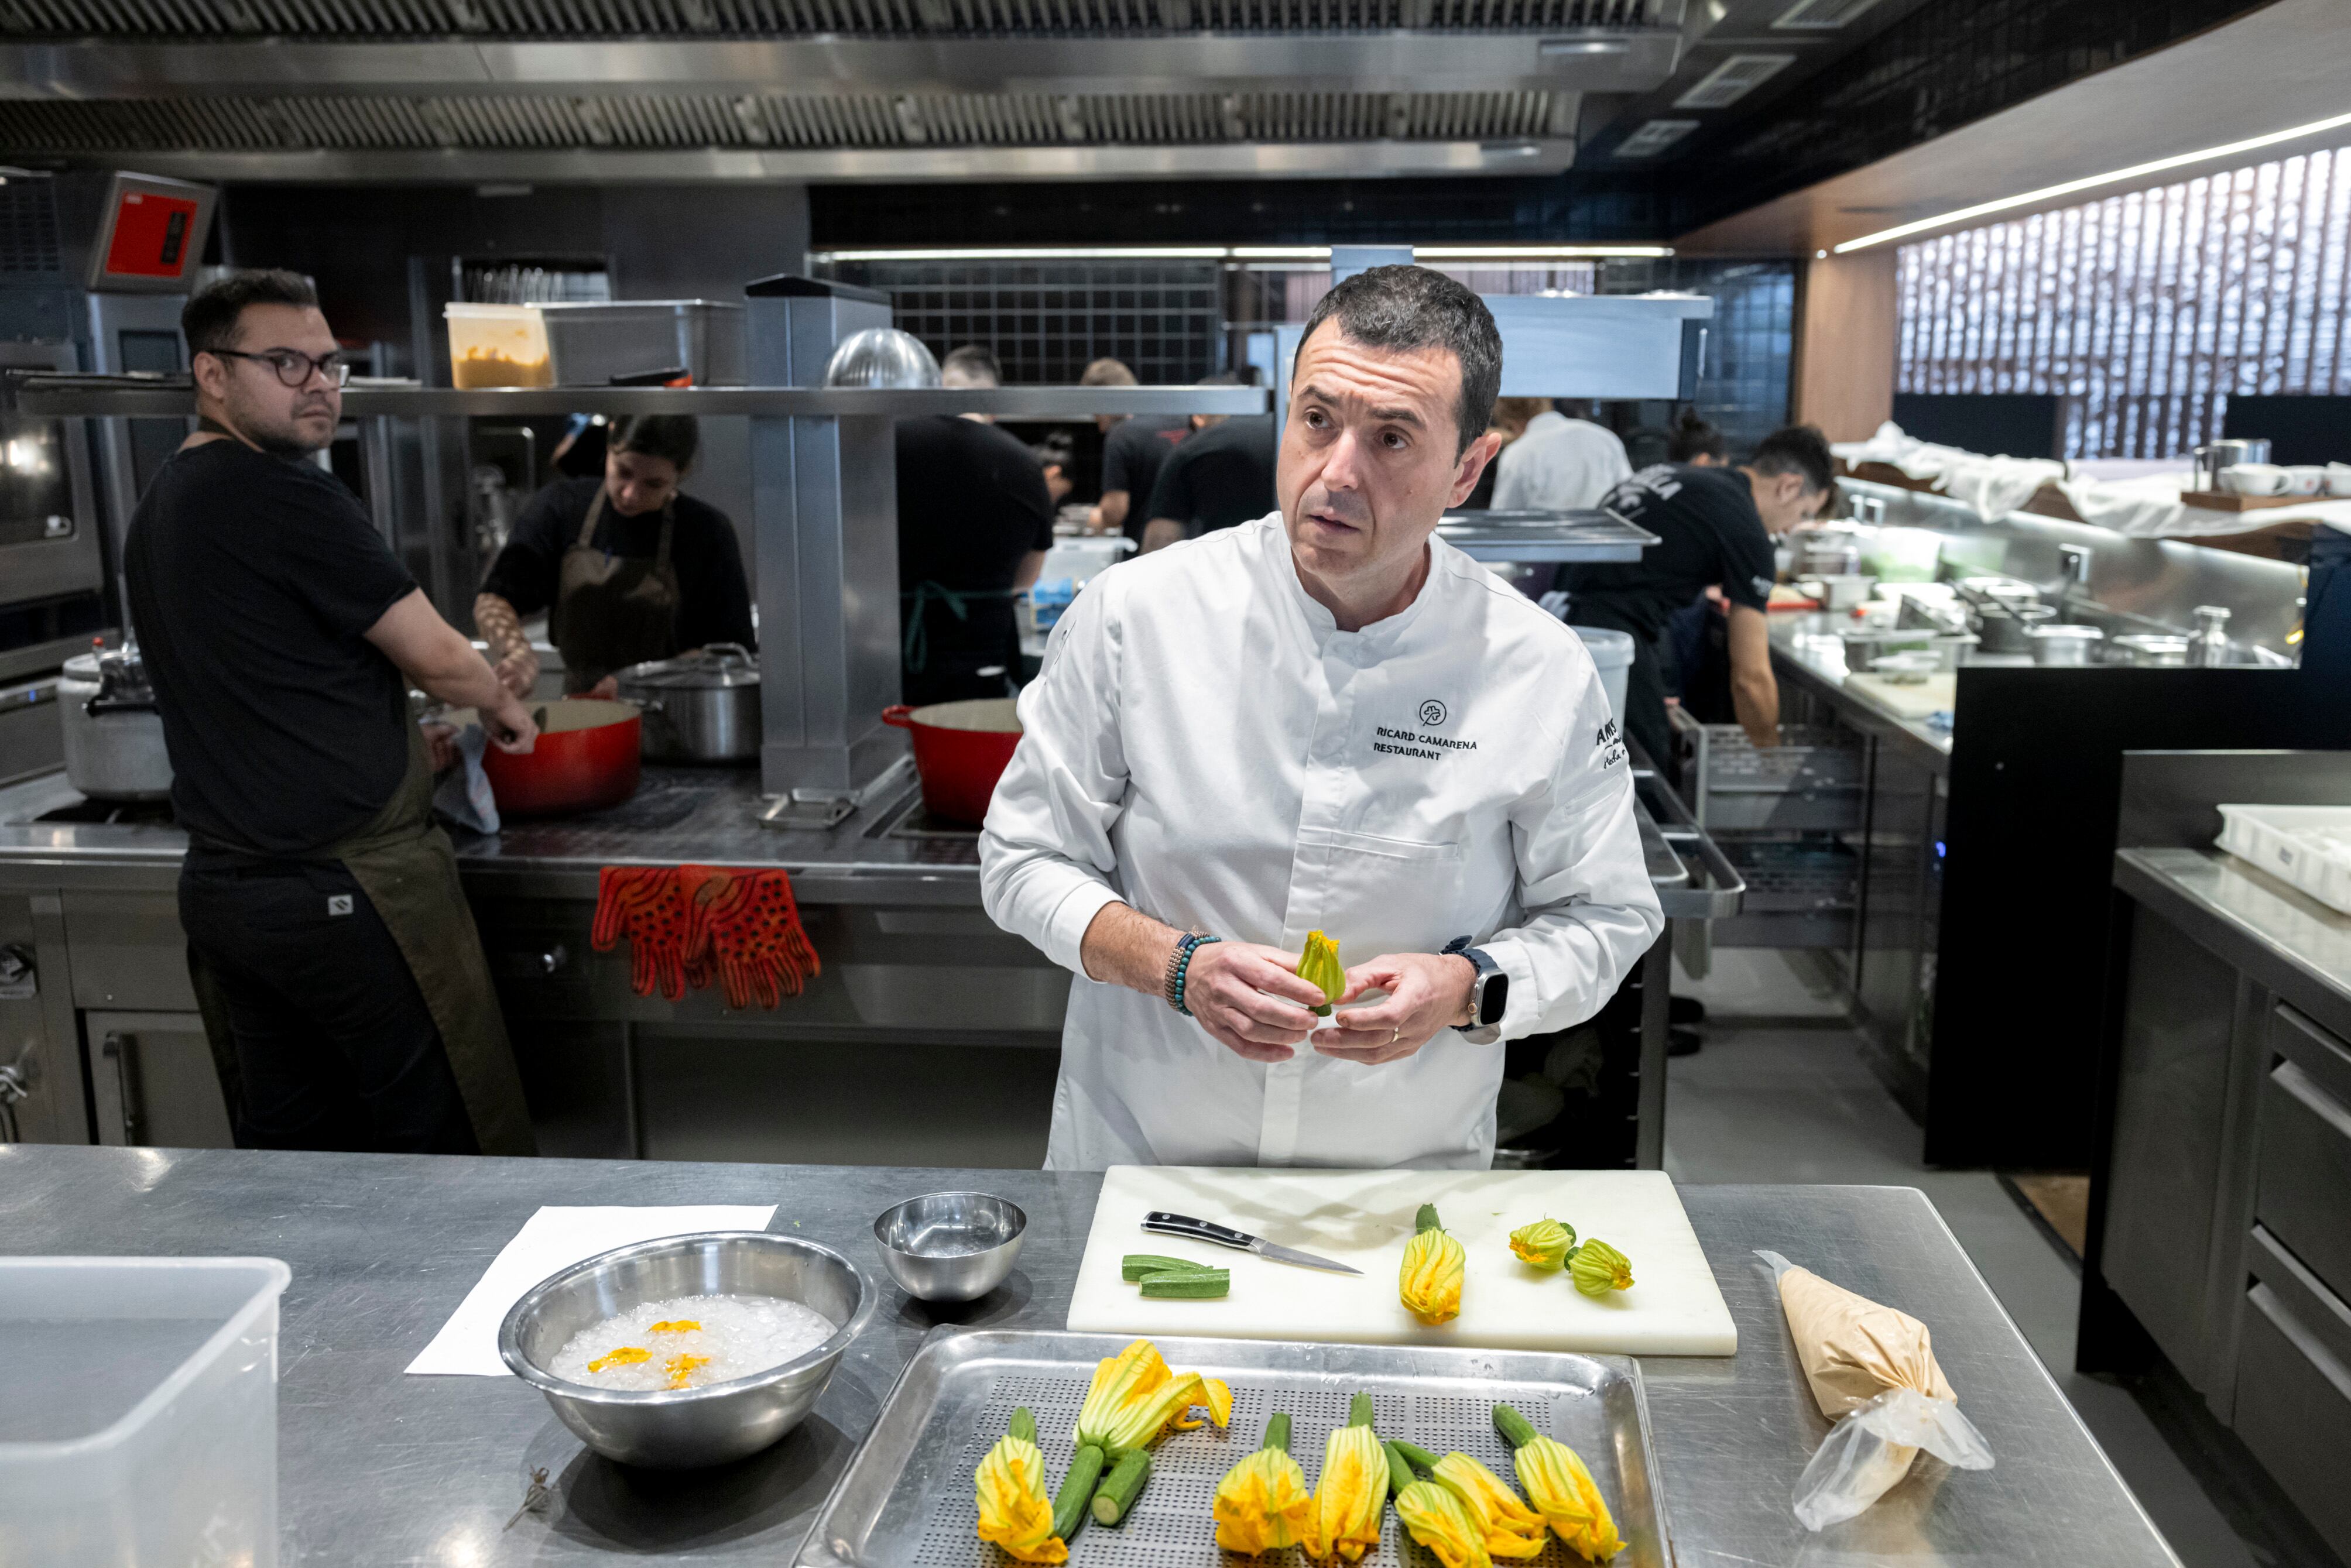 Ricard Camarena, el pasado jueves, en la cocina del restaurante, preparando uno de sus platos, el de gamba roja, flor de calabacín y limón.